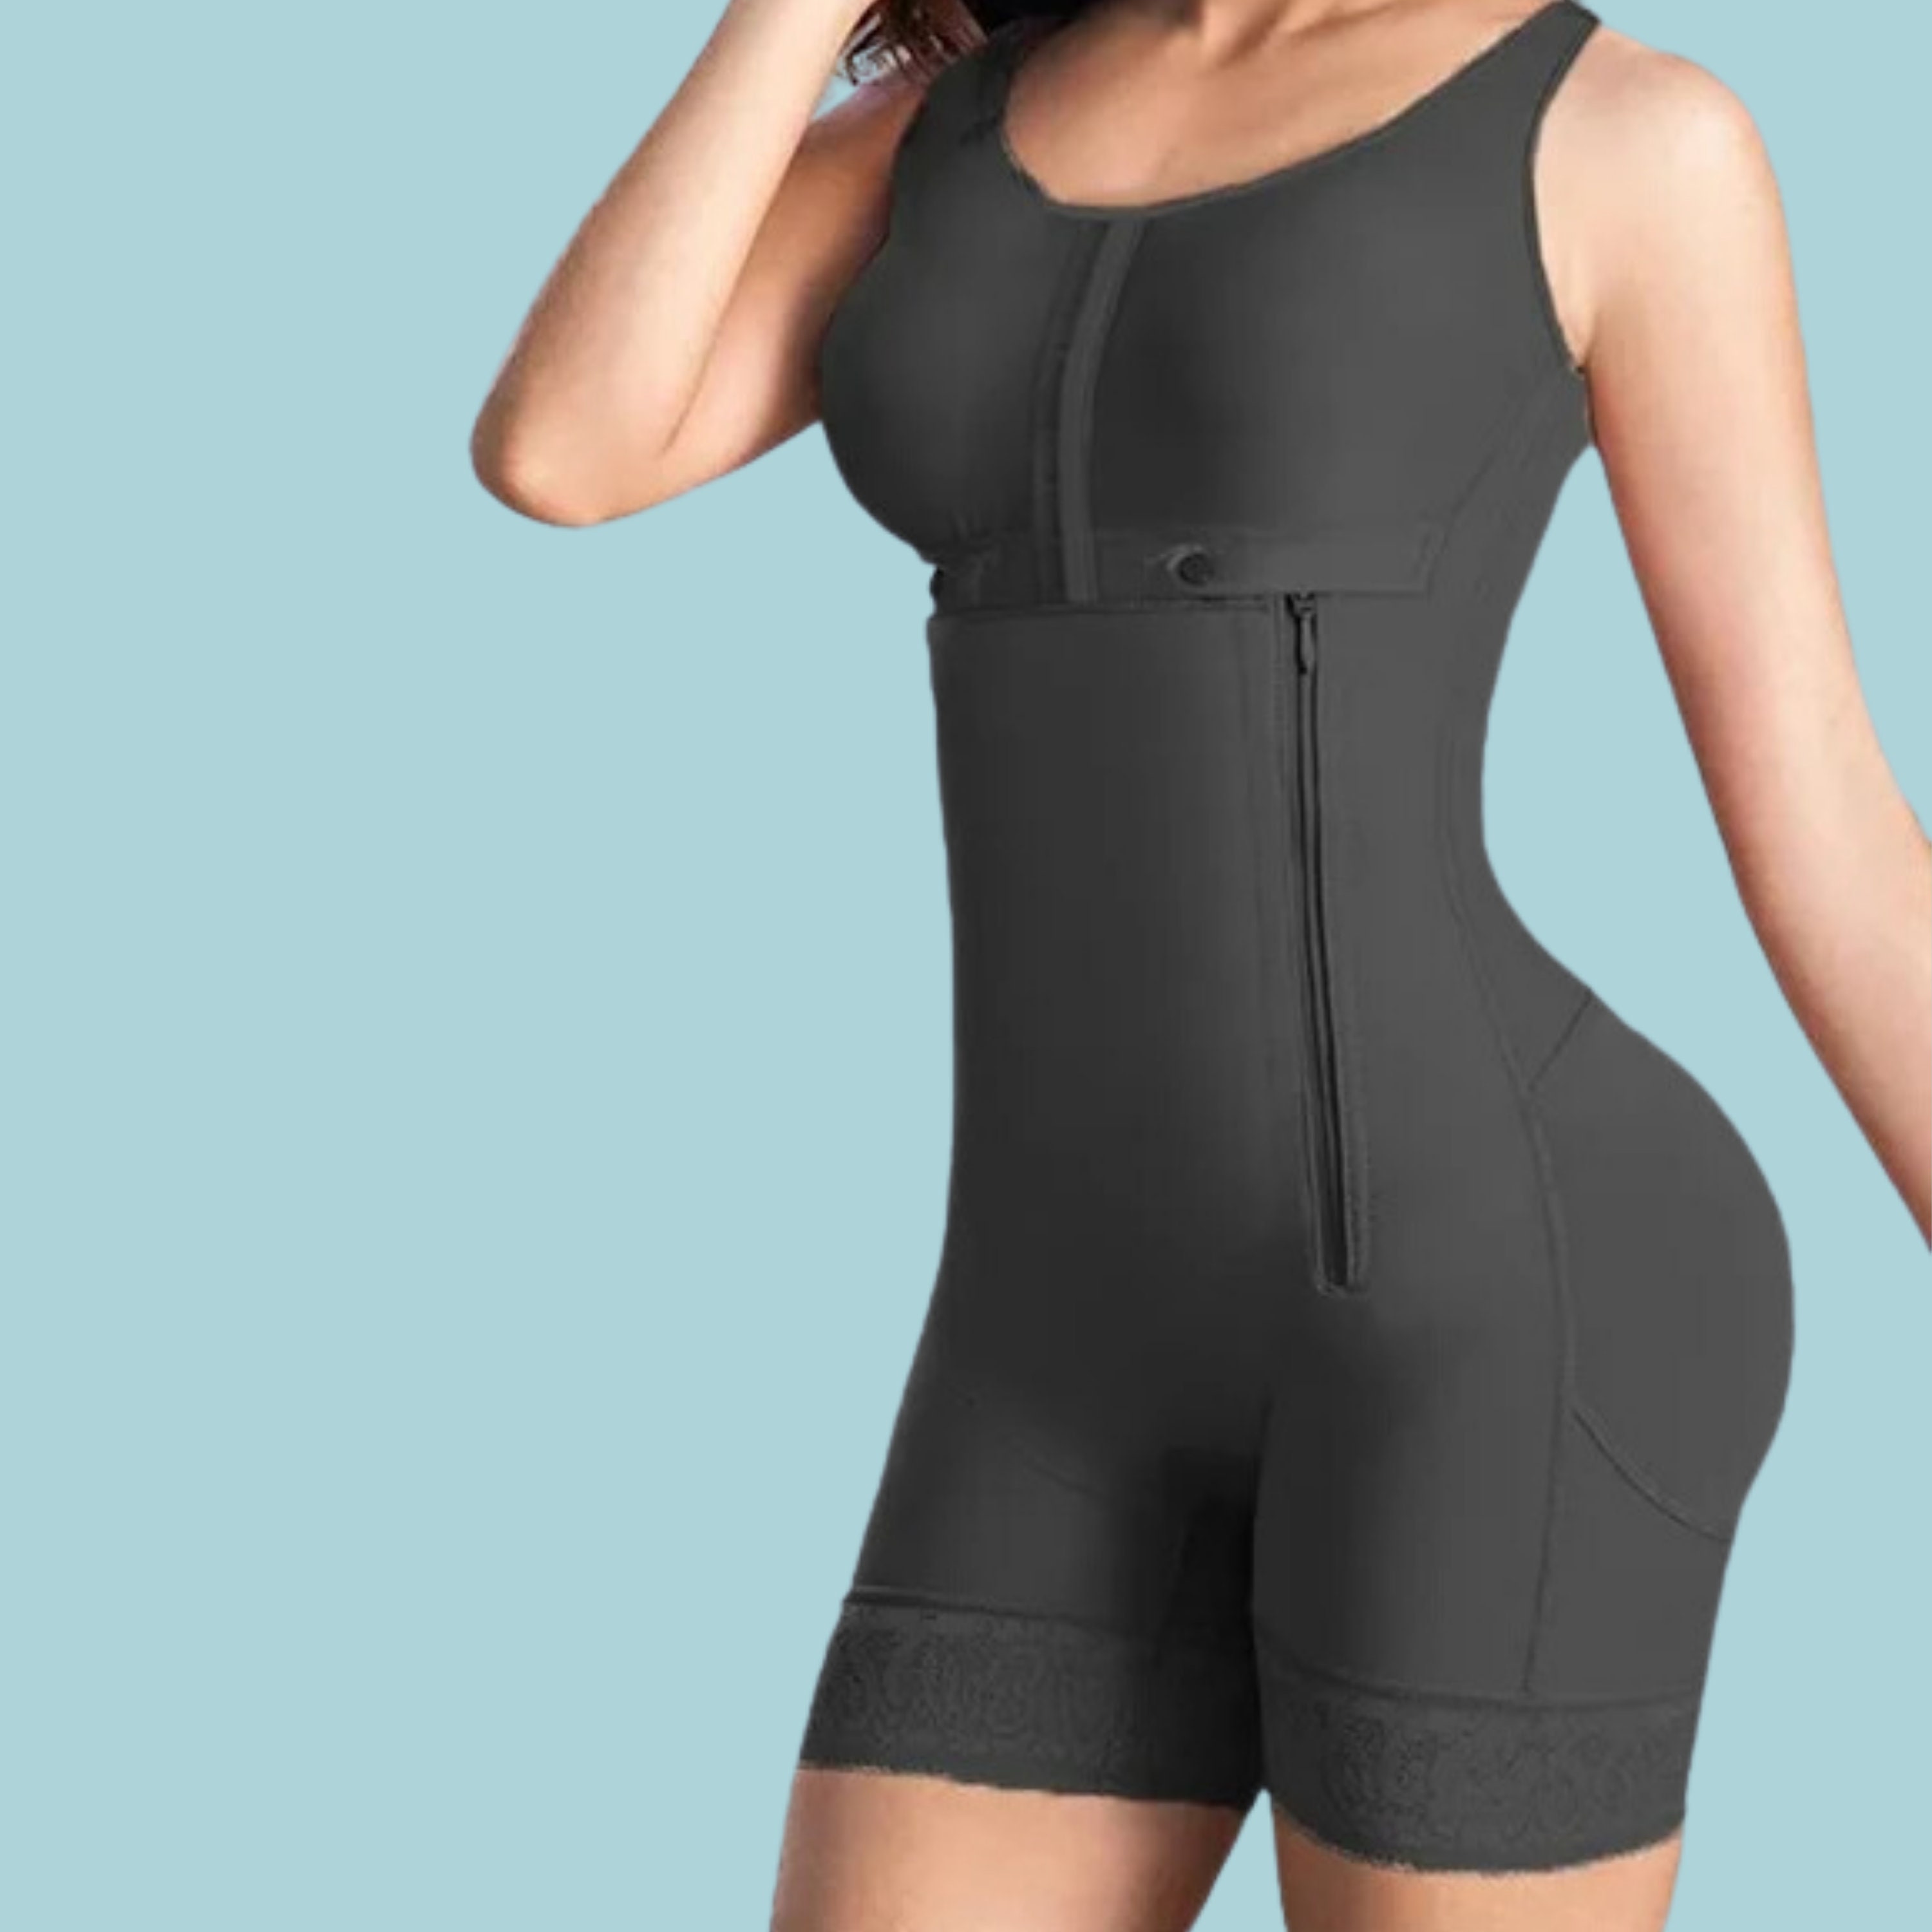 Sheathing Bodysuit for Women/ Lingerie/ Flat Stomach/ Long Sleeves